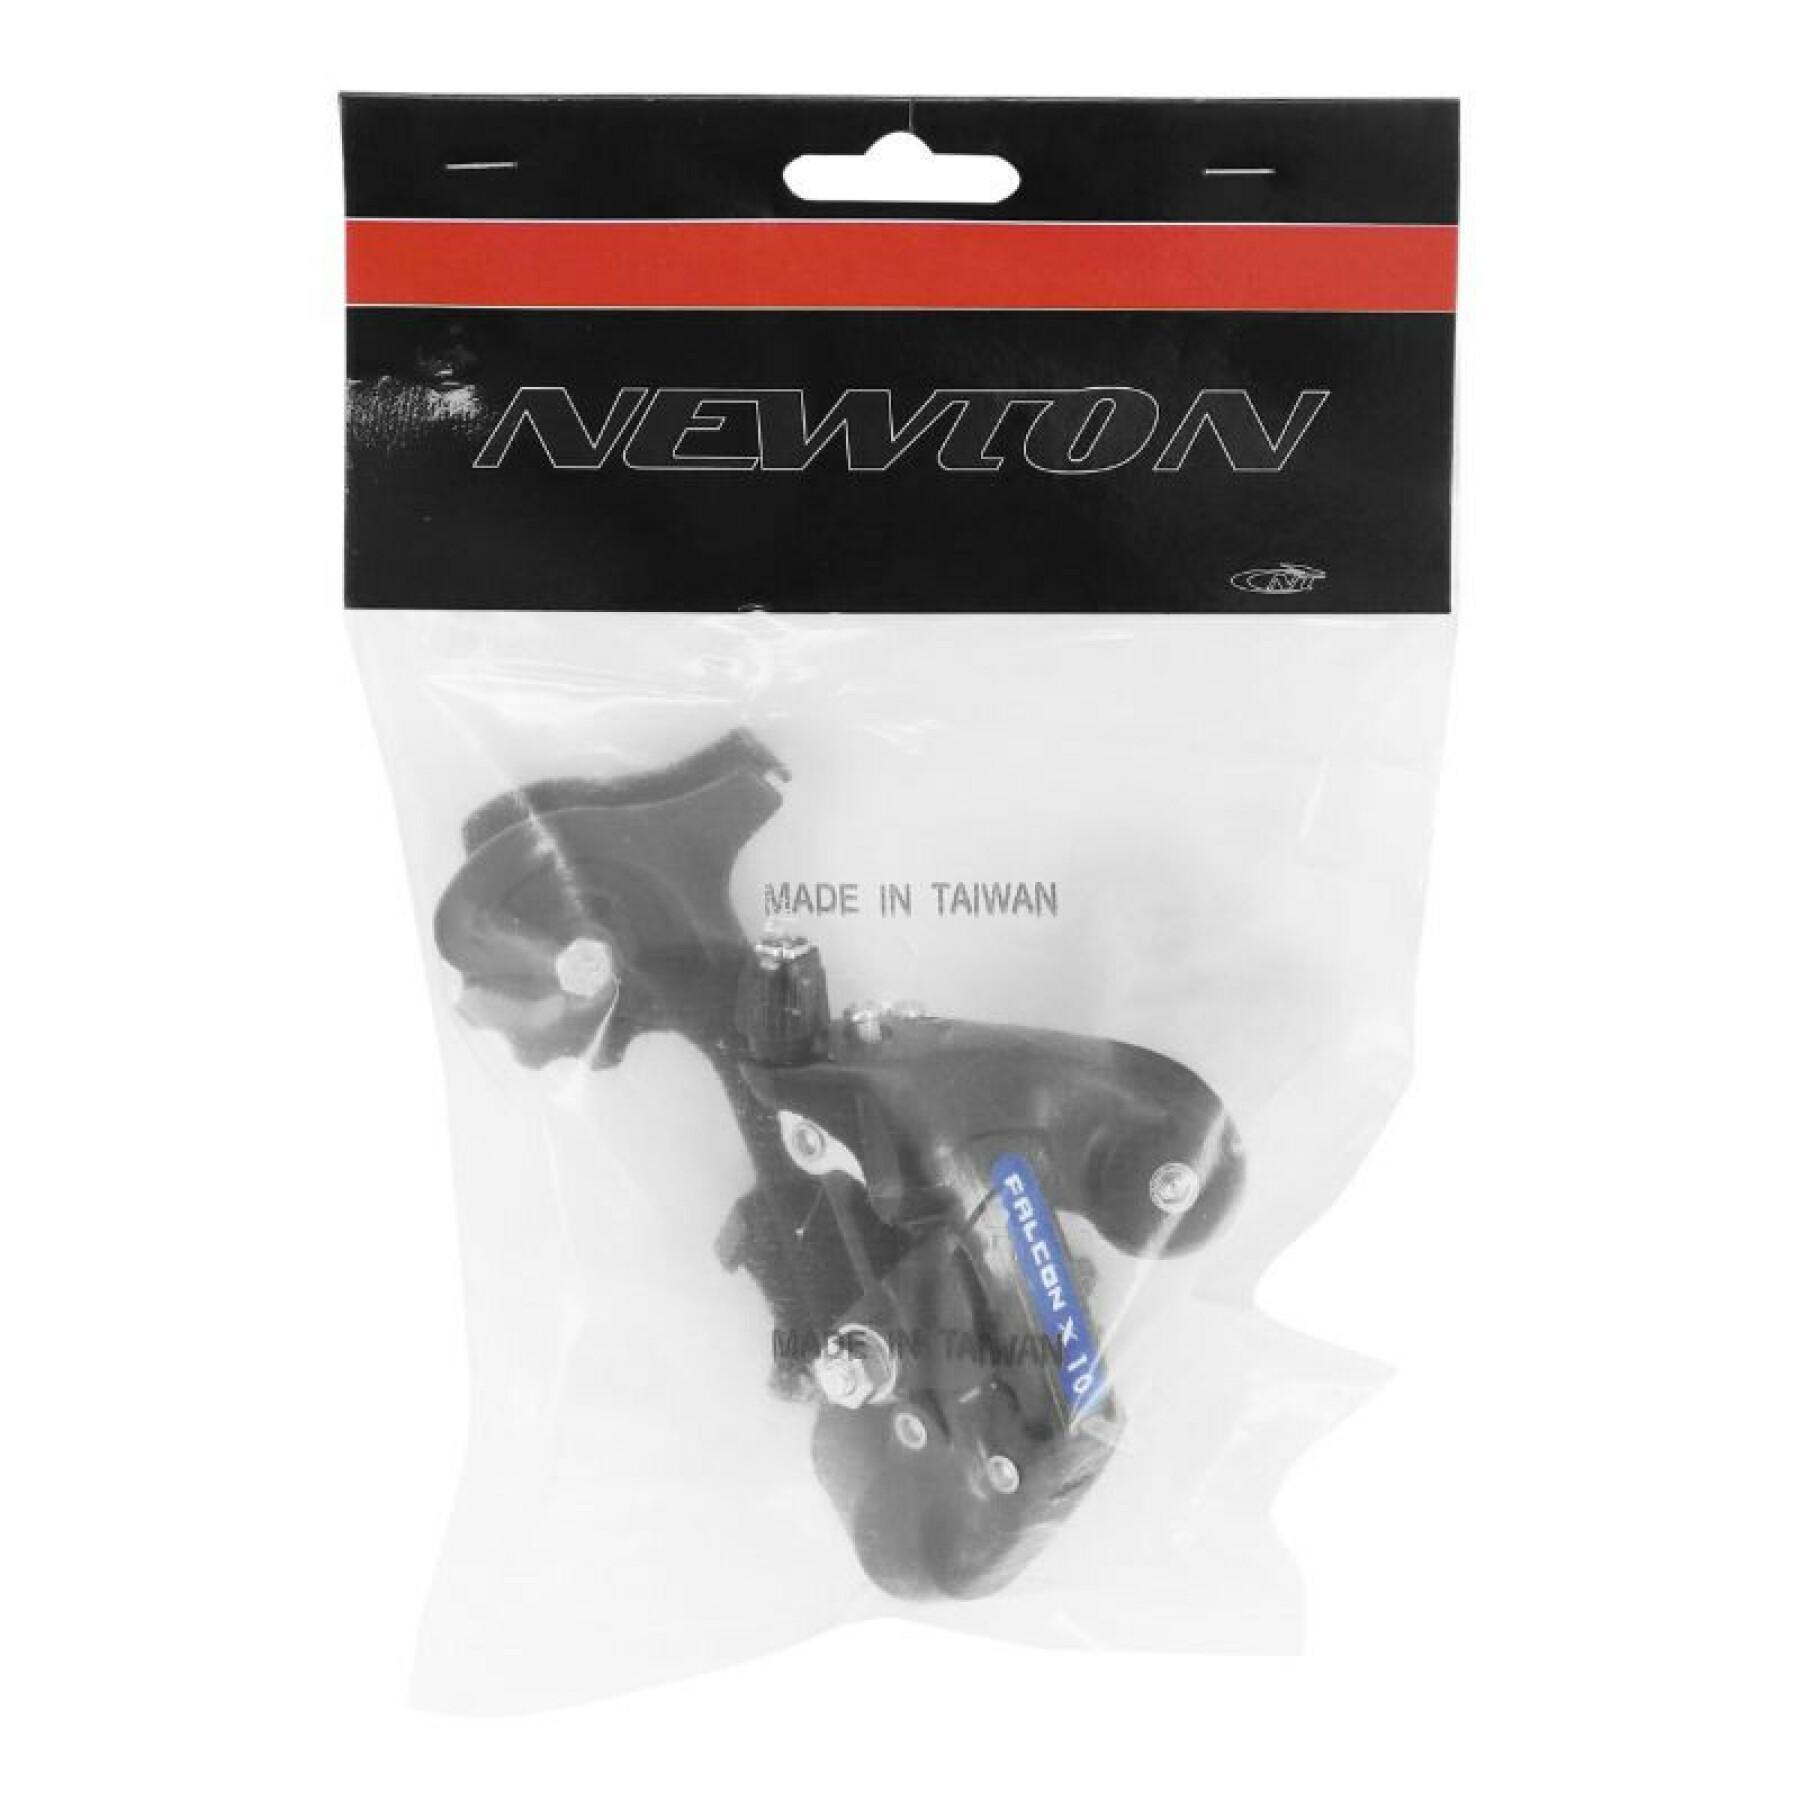 Schaltwerk für Mountainbike mit großem Gabelkopf zum Anschrauben Newton 6-7V.